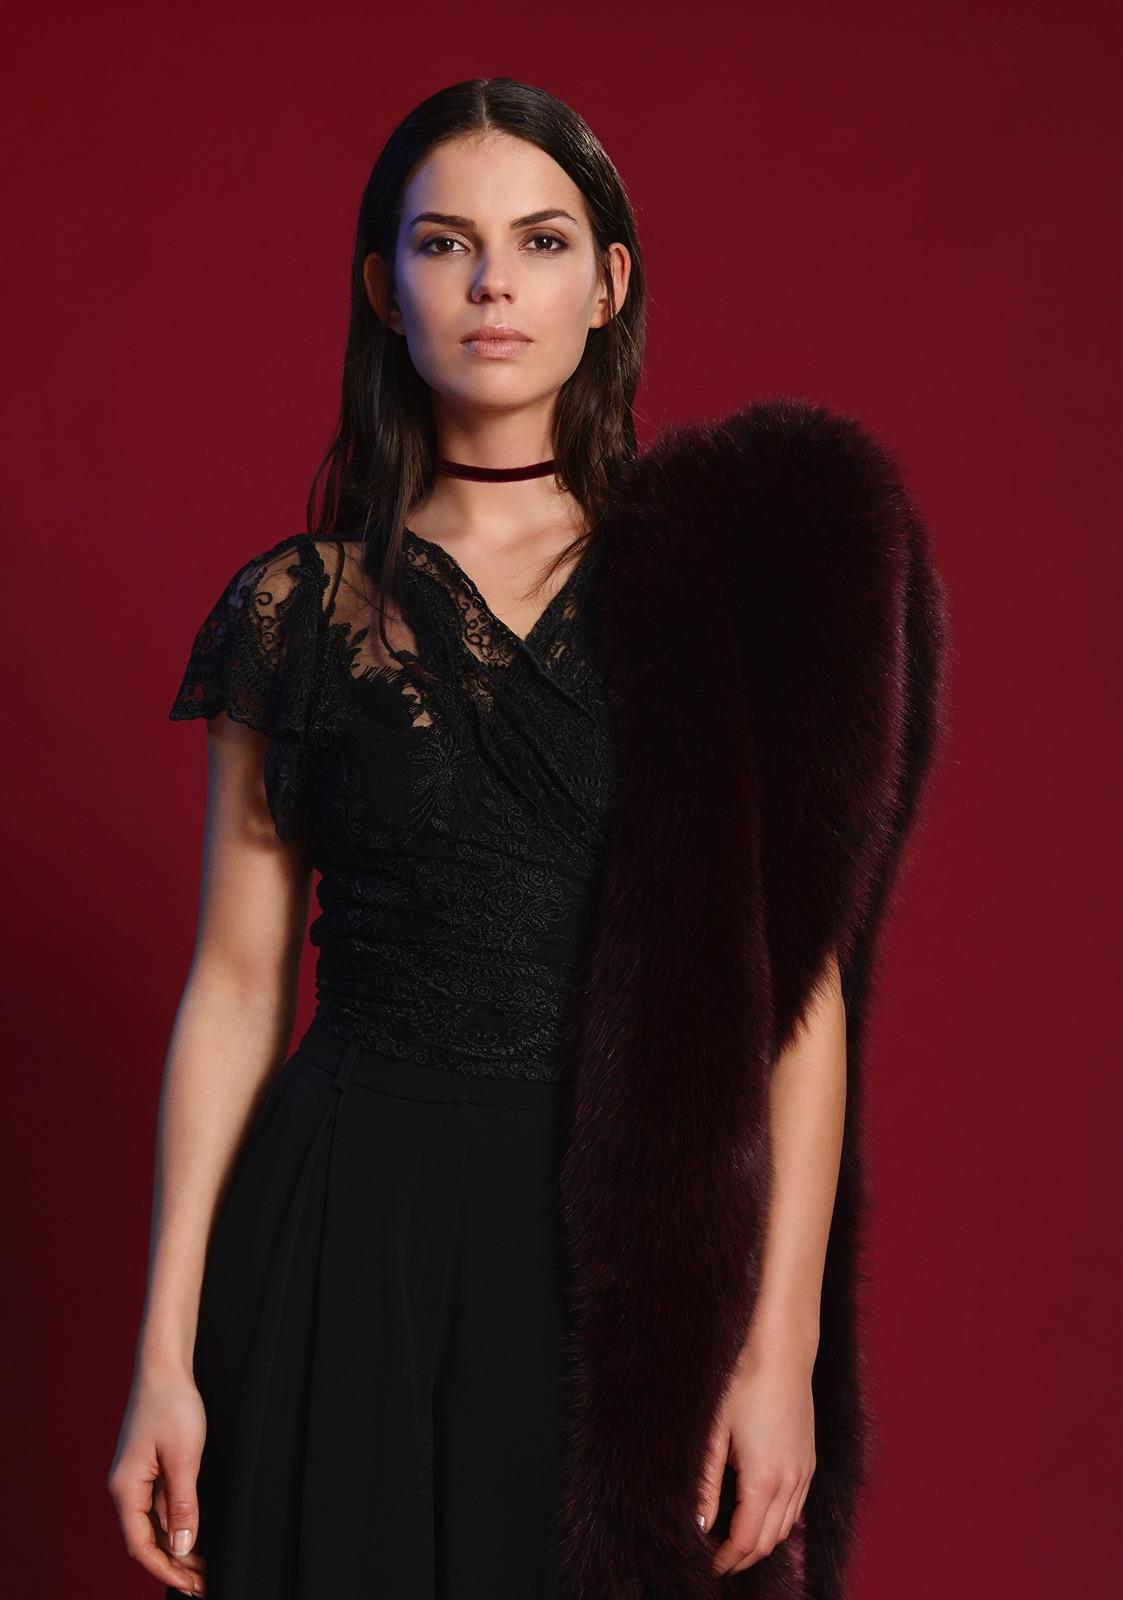 Black Verheyen London Legacy Stole Collar in Garnet Burgundy Fox Fur - Brand New 